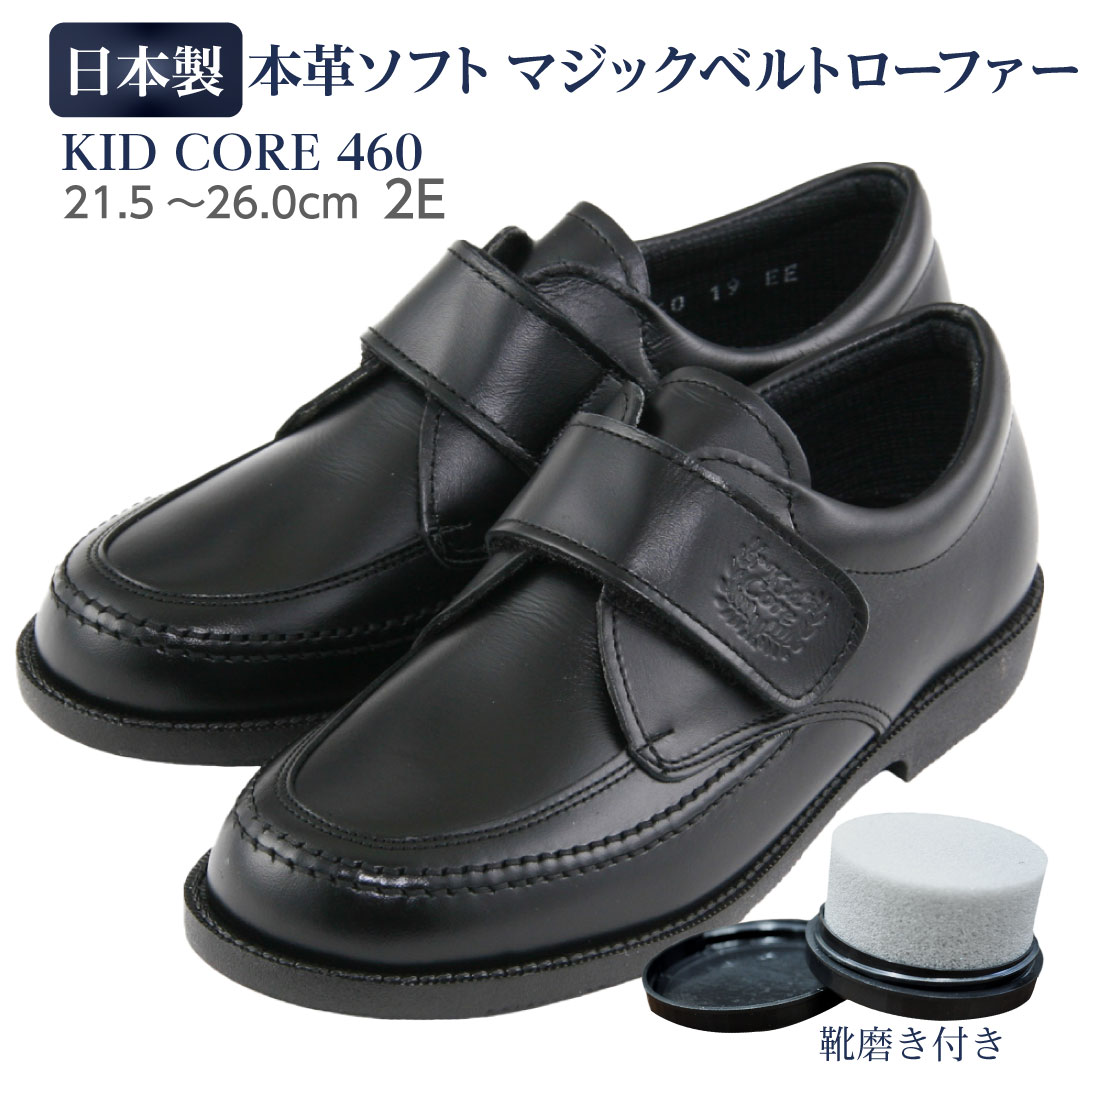 KID CORE キッドコア 2E 日本製本革ソフトタイプ マジックベルトローファー ピンクッションソール 快適素材ＭＡＲＩＱＵＥ（マリーク）使用 靴ズレしにくい靴